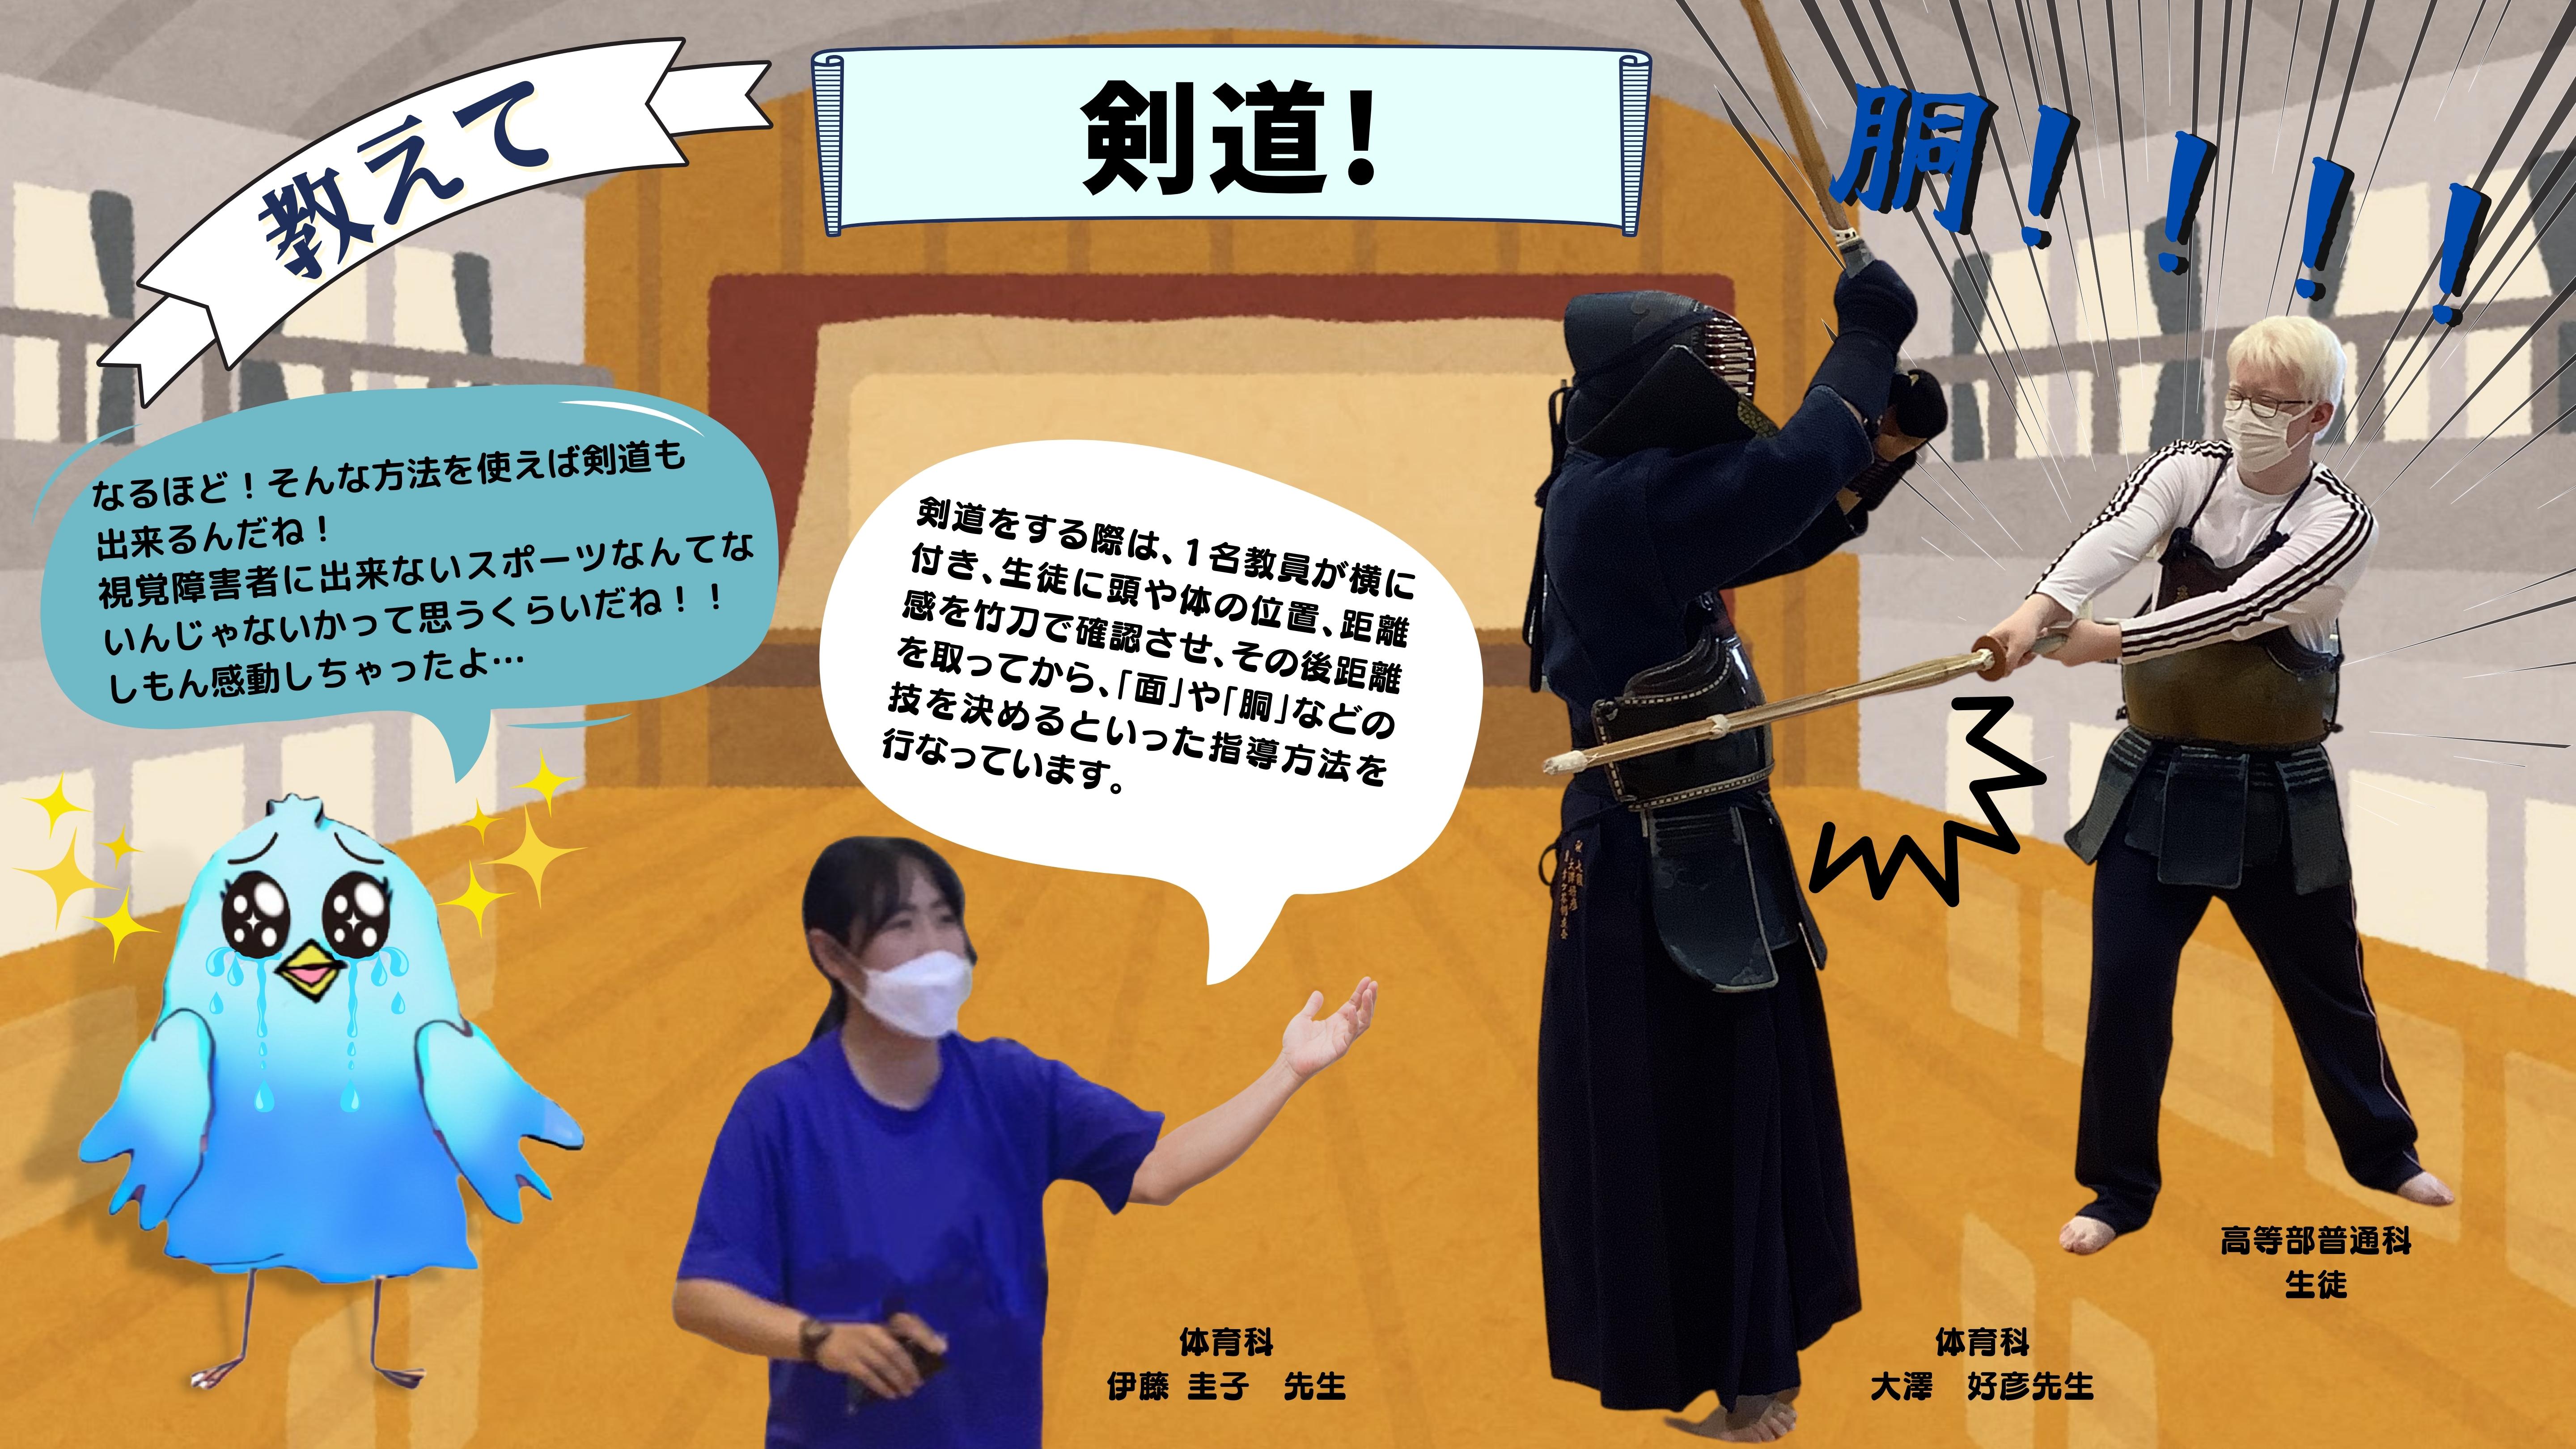 教えて剣道：（同じ体育科の伊藤圭子先生が視覚障害を持った生徒の剣道のやり方を解説している様子のイラスト）（伊藤圭子先生）剣道をする際は、１名教員が横に付き、生徒に頭や体の位置、距離感を竹刀で確認させ、その後距離を取ってから、「面」や「胴」などの技を決めるといった指導方法を行なっています。（しもん）なるほど！そんな方法を使えば剣道も 出来るんだね！ 視覚障害者に出来ないスポーツなんてないんじゃないかって思うくらいだね！！ しもん感動しちゃったよ…　（普通科生徒）どおおおおおおう！（「胴」を大澤先生に入れている様子の画像）